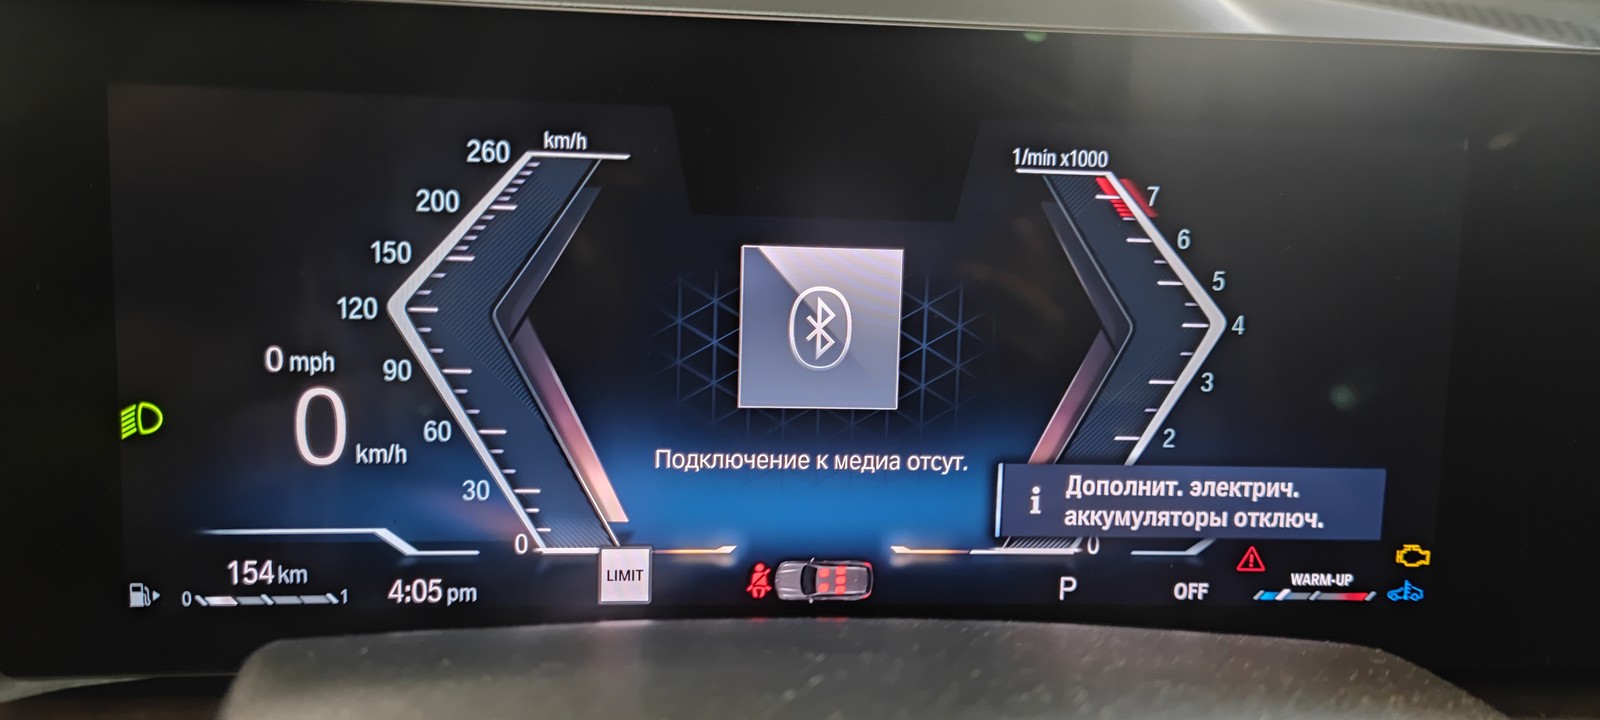 Сообщения на приборной панели BMW G07 на русском языке